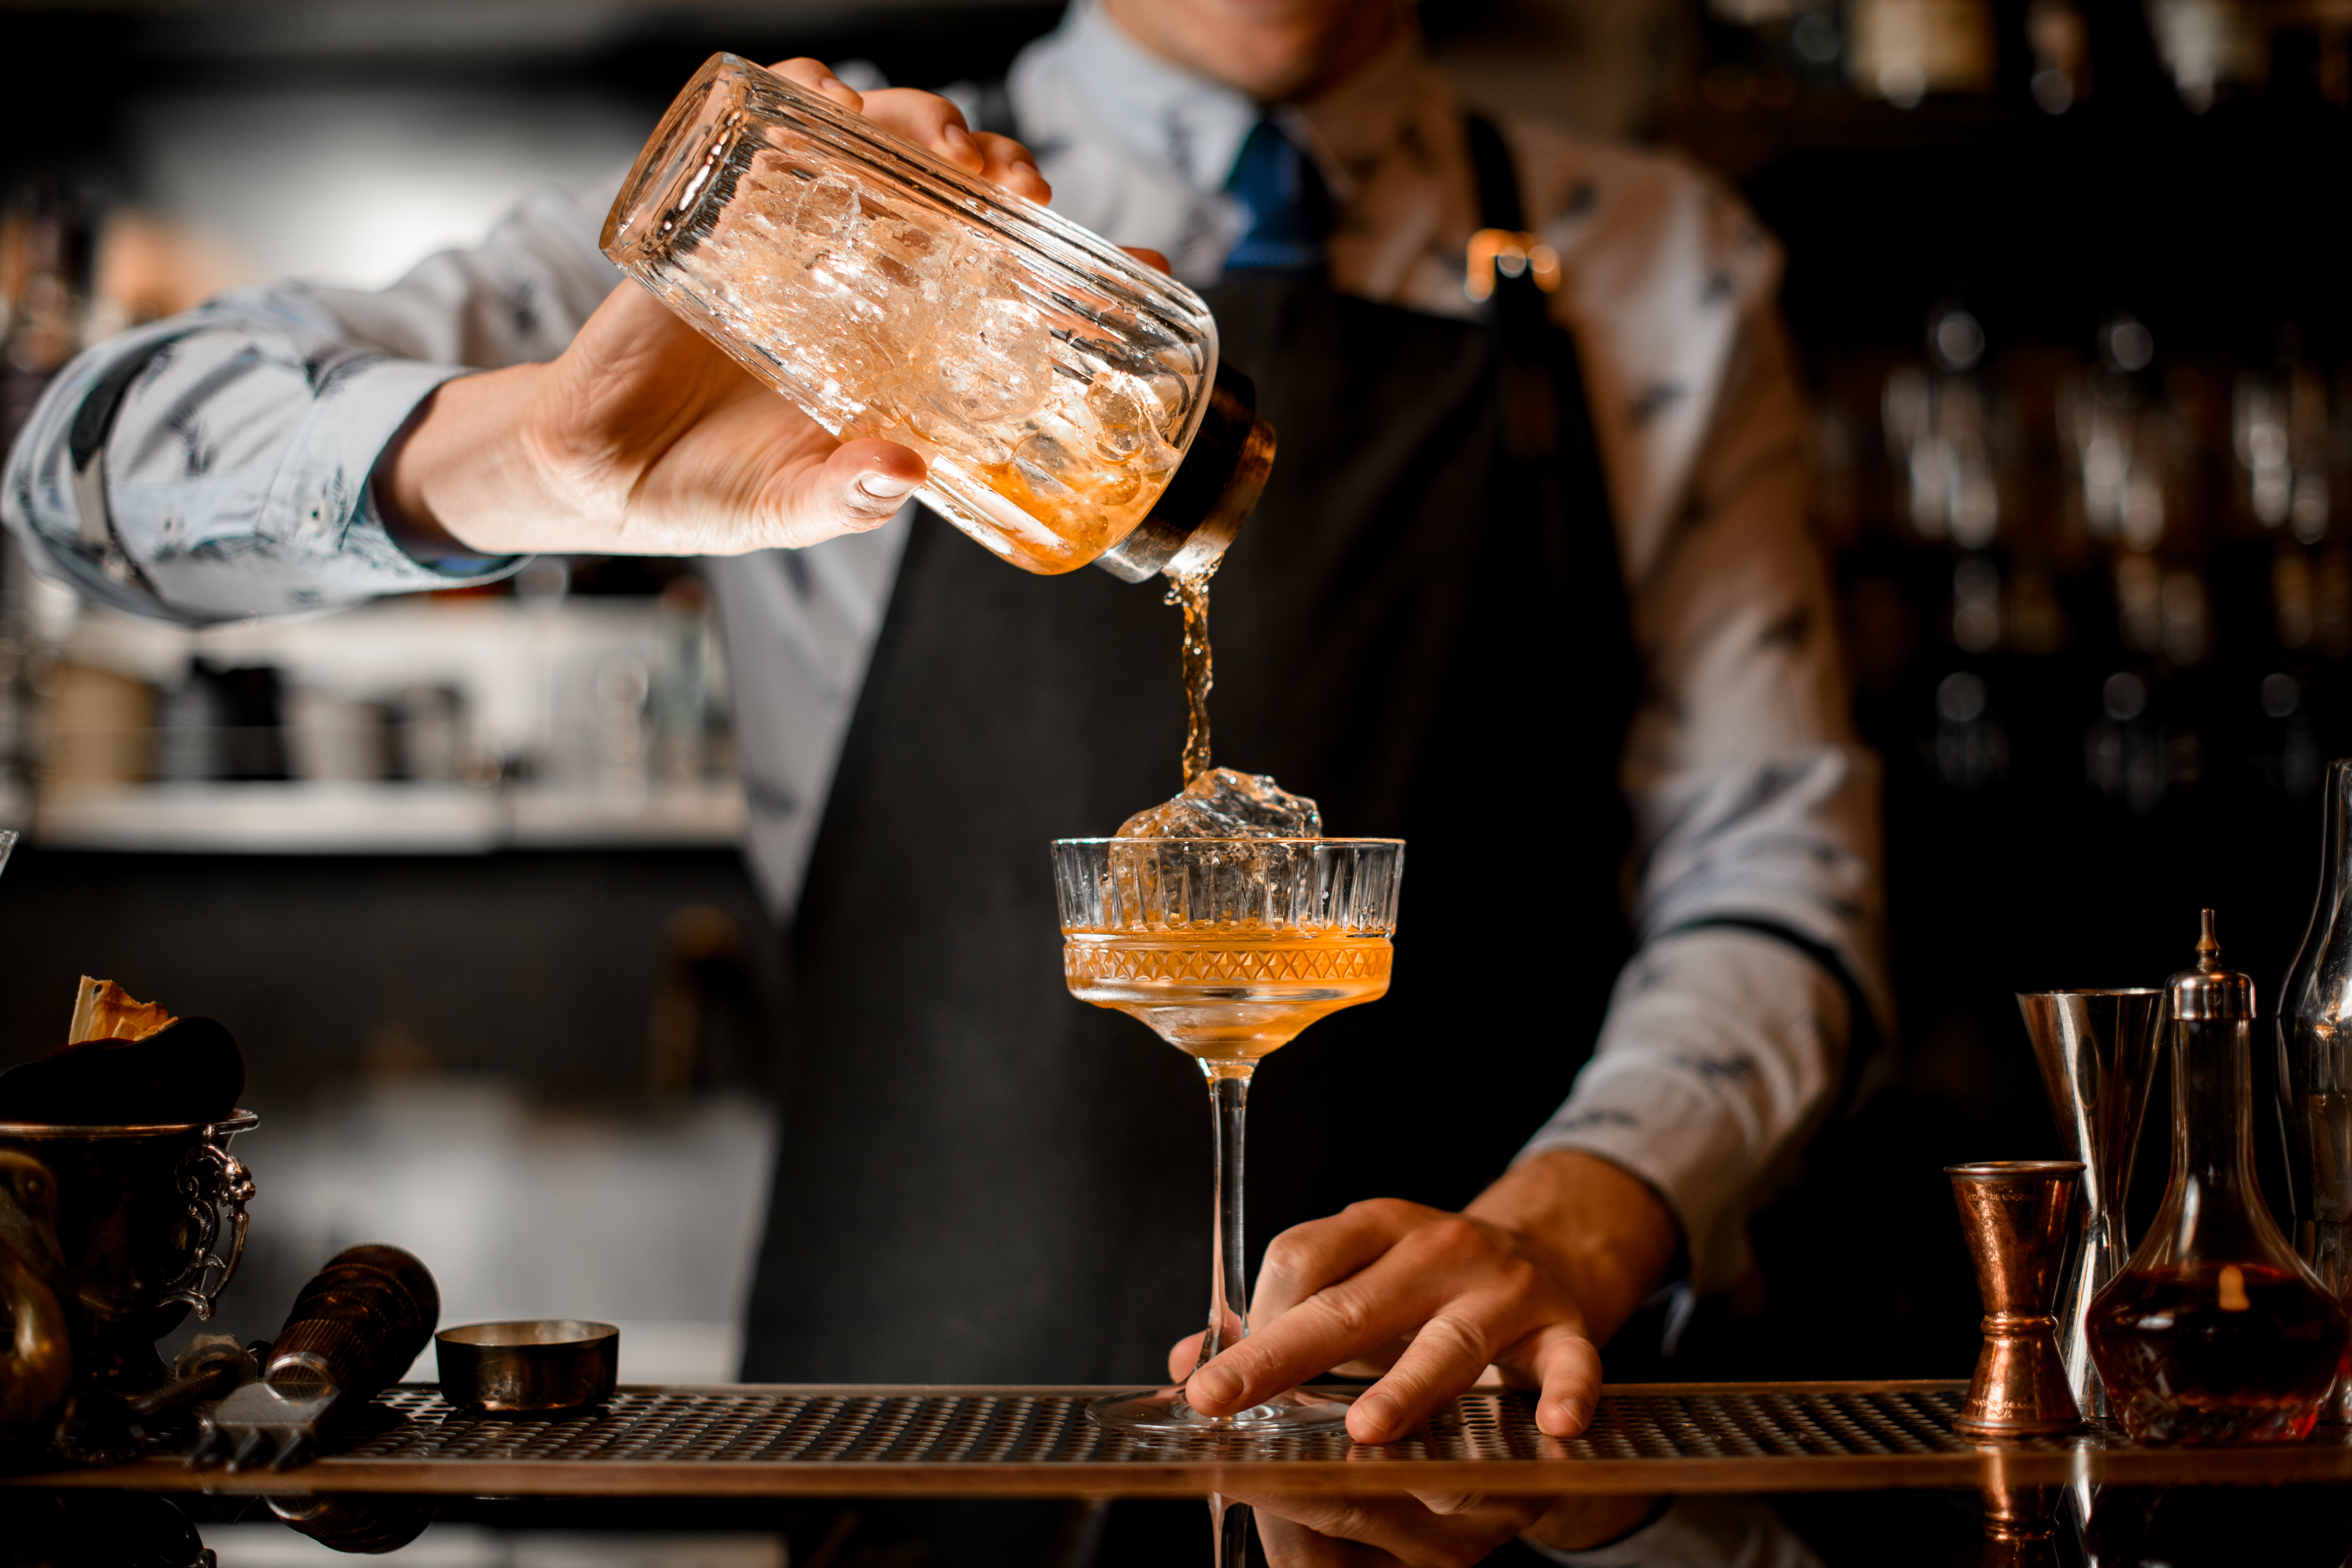 A bartender | Source: Shutterstock